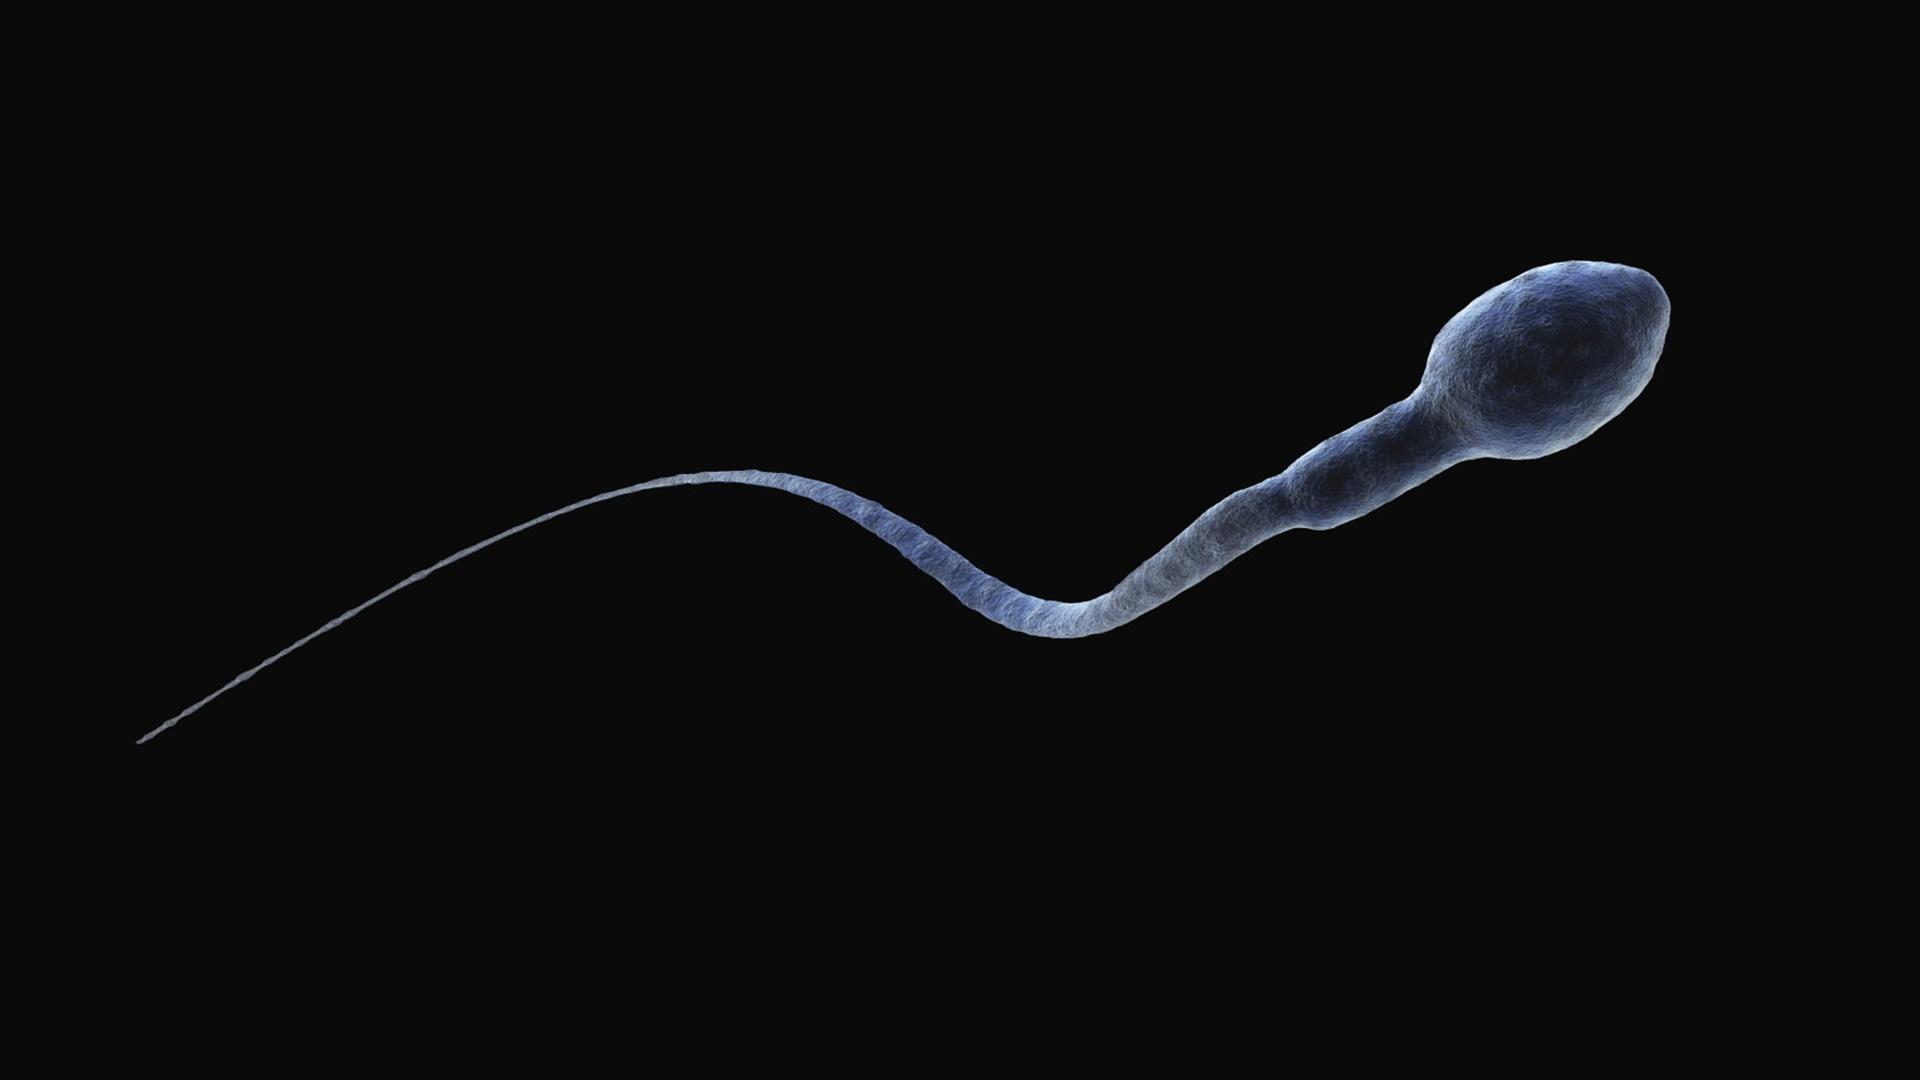 Дефектная сперма: виновен коварный эпигеном